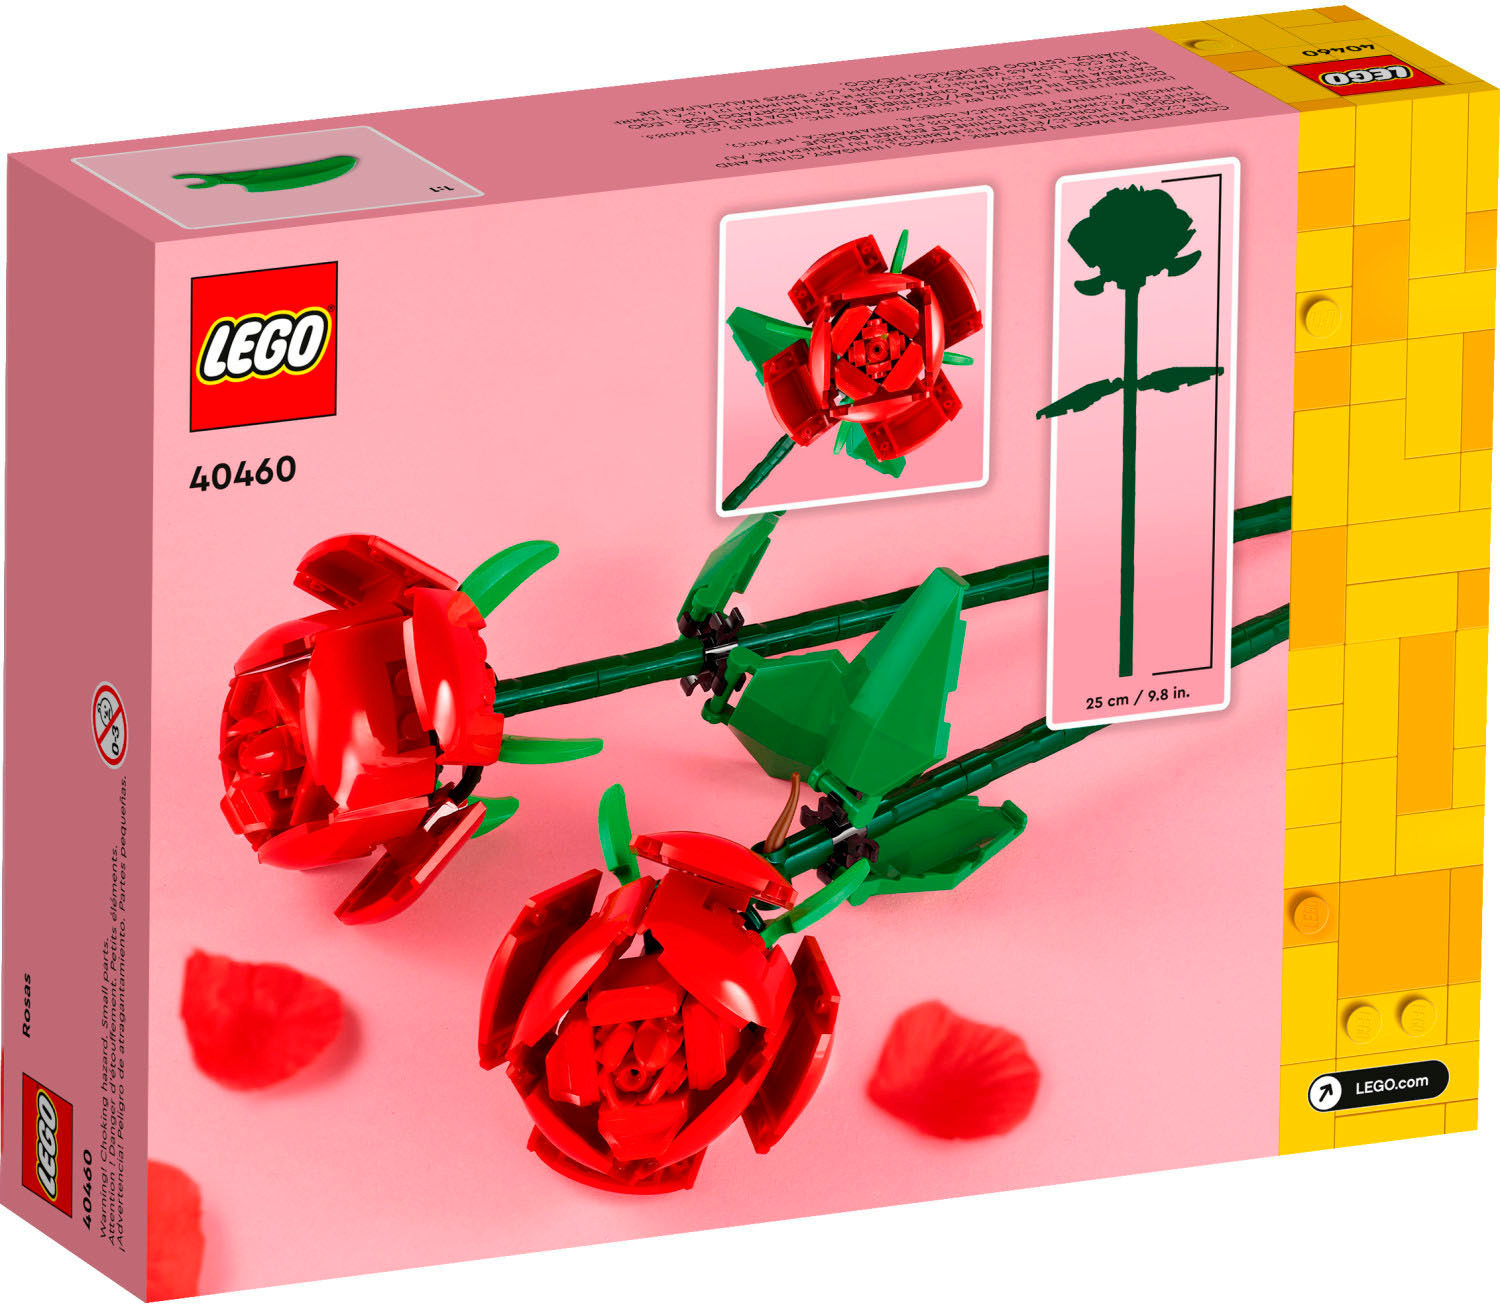 LEGO Roses Building Kit, Unique Easter Gift for Teens or Kids, Botanical  Collection Building Set, Easter Basket Stuffer to Build Together, 40460 